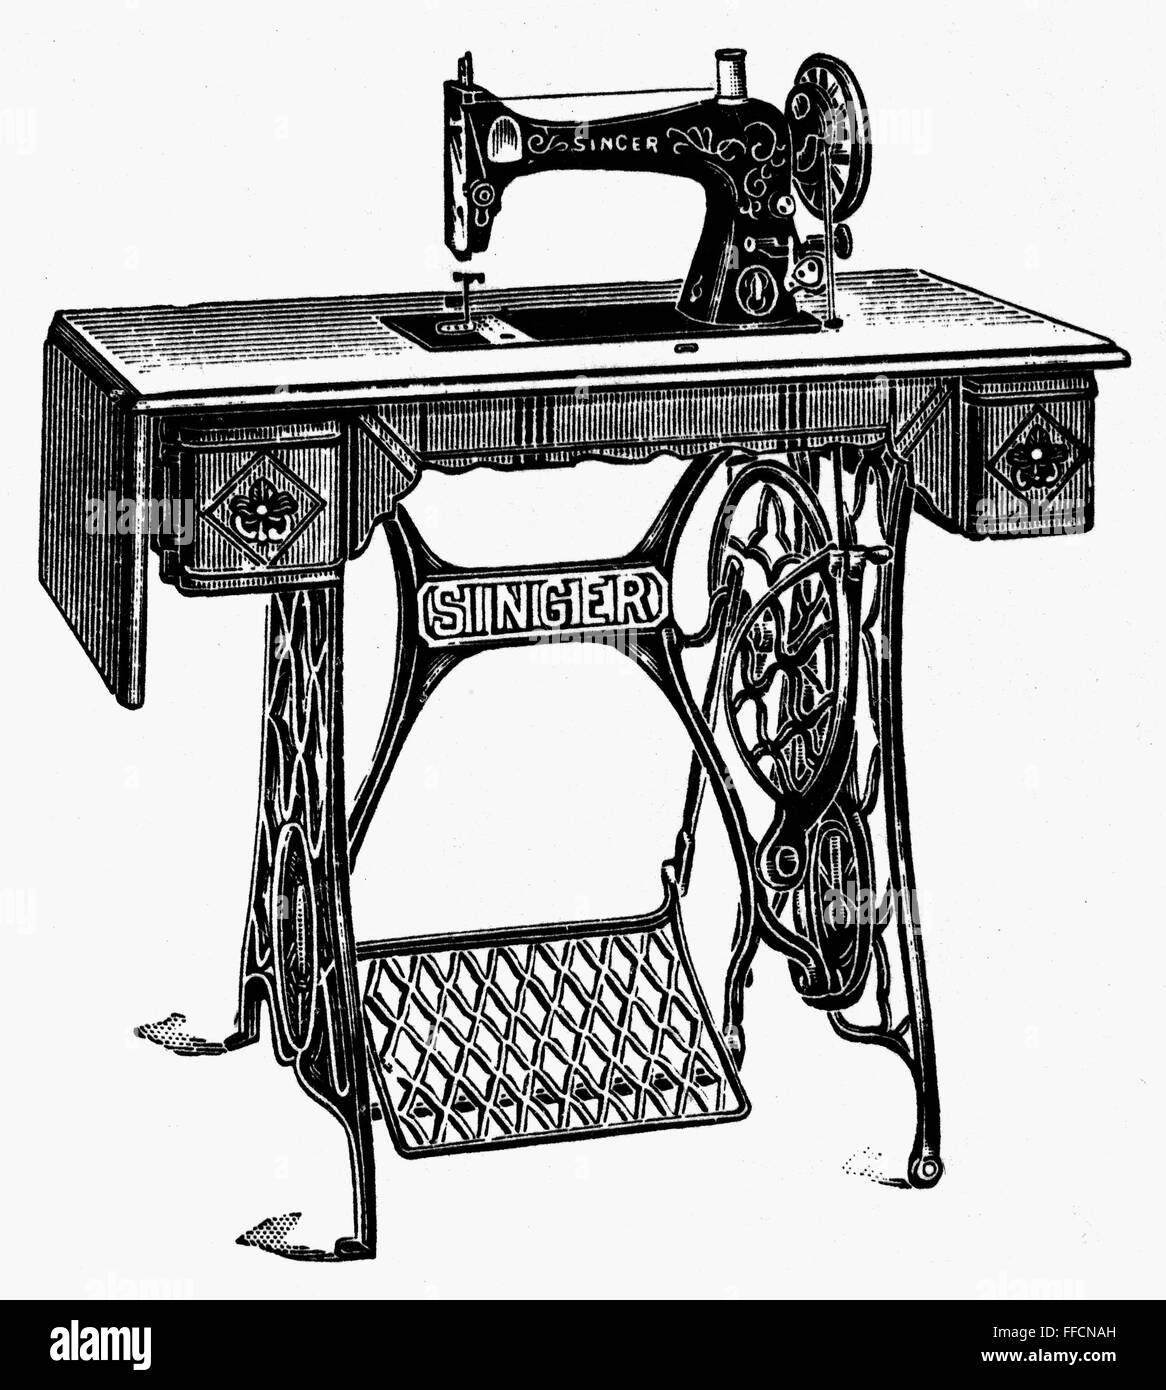 Ремонт швейной машинки зингер. Швейная машина 19 века Зингер. Швейная машинка Зингер дореволюционная. Швейная машинка Зингер 19 века.